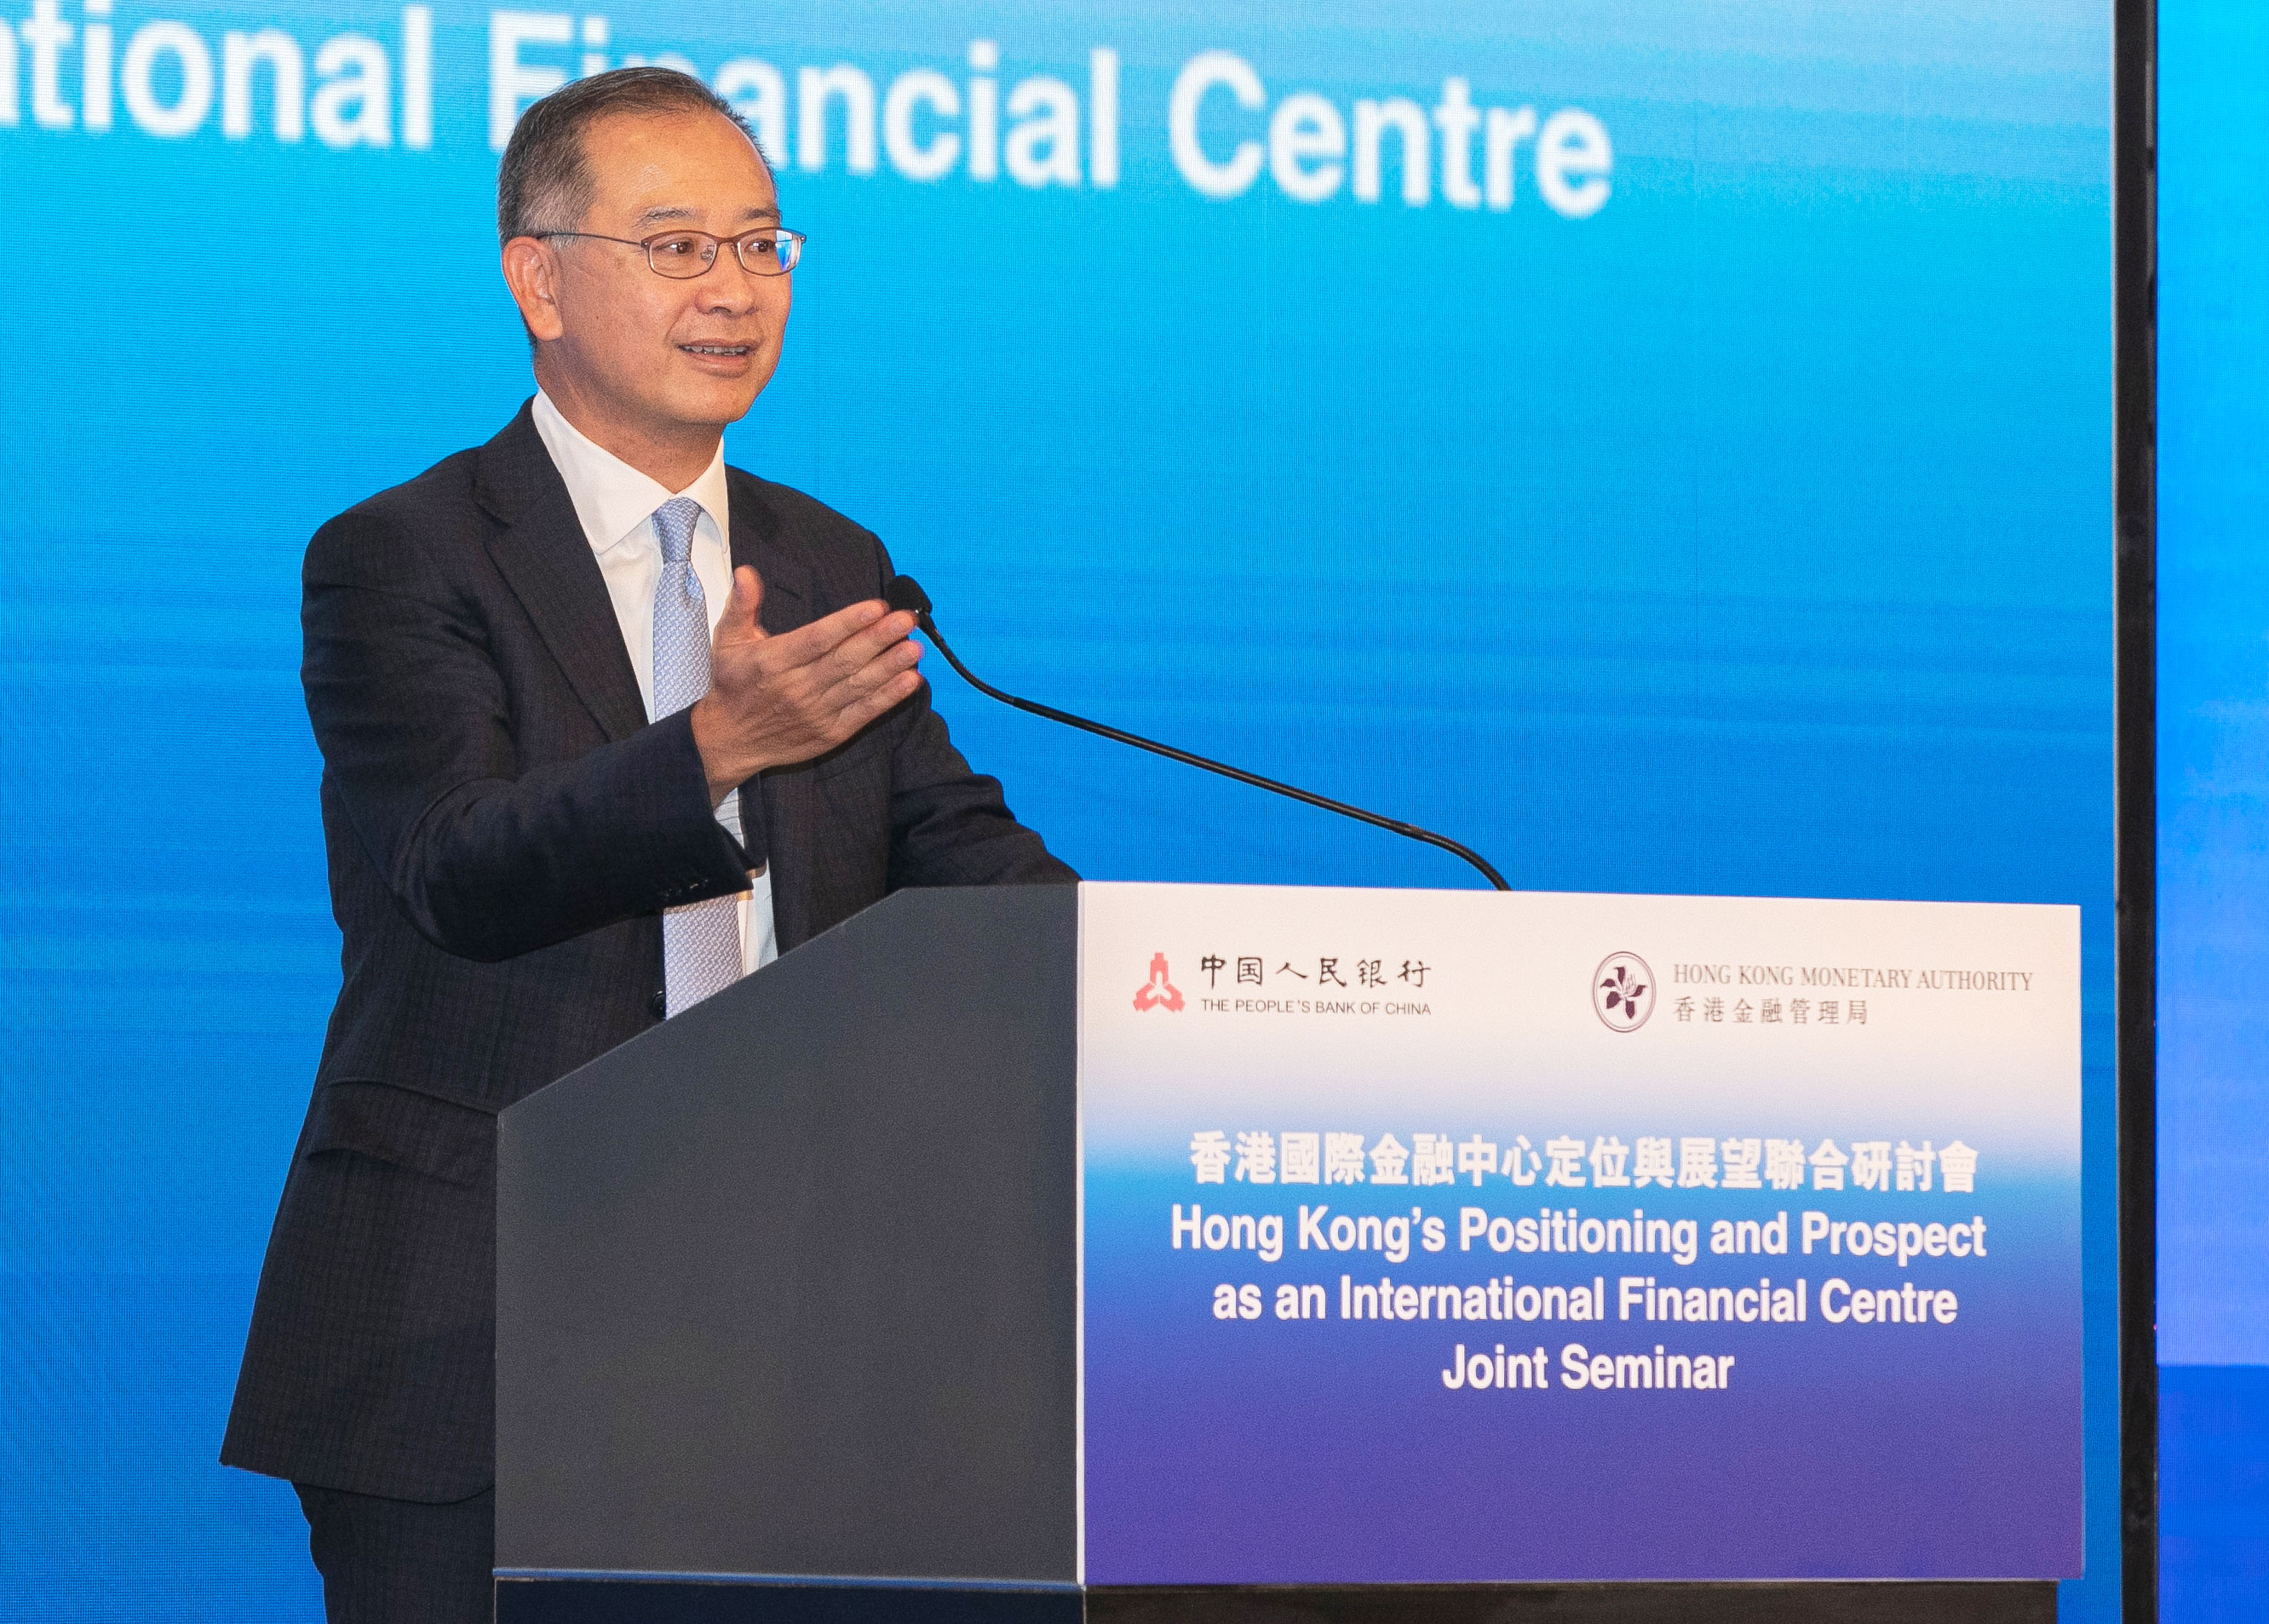 香港金融管理局总裁余伟文先生今日（12月9日）于「香港国际金融中心定位与展望」主题研讨会致开幕辞时强调，作为全球领先的国际金融中心，香港会善用独特优势，在多个金融领域不断寻求新的突破和发展。